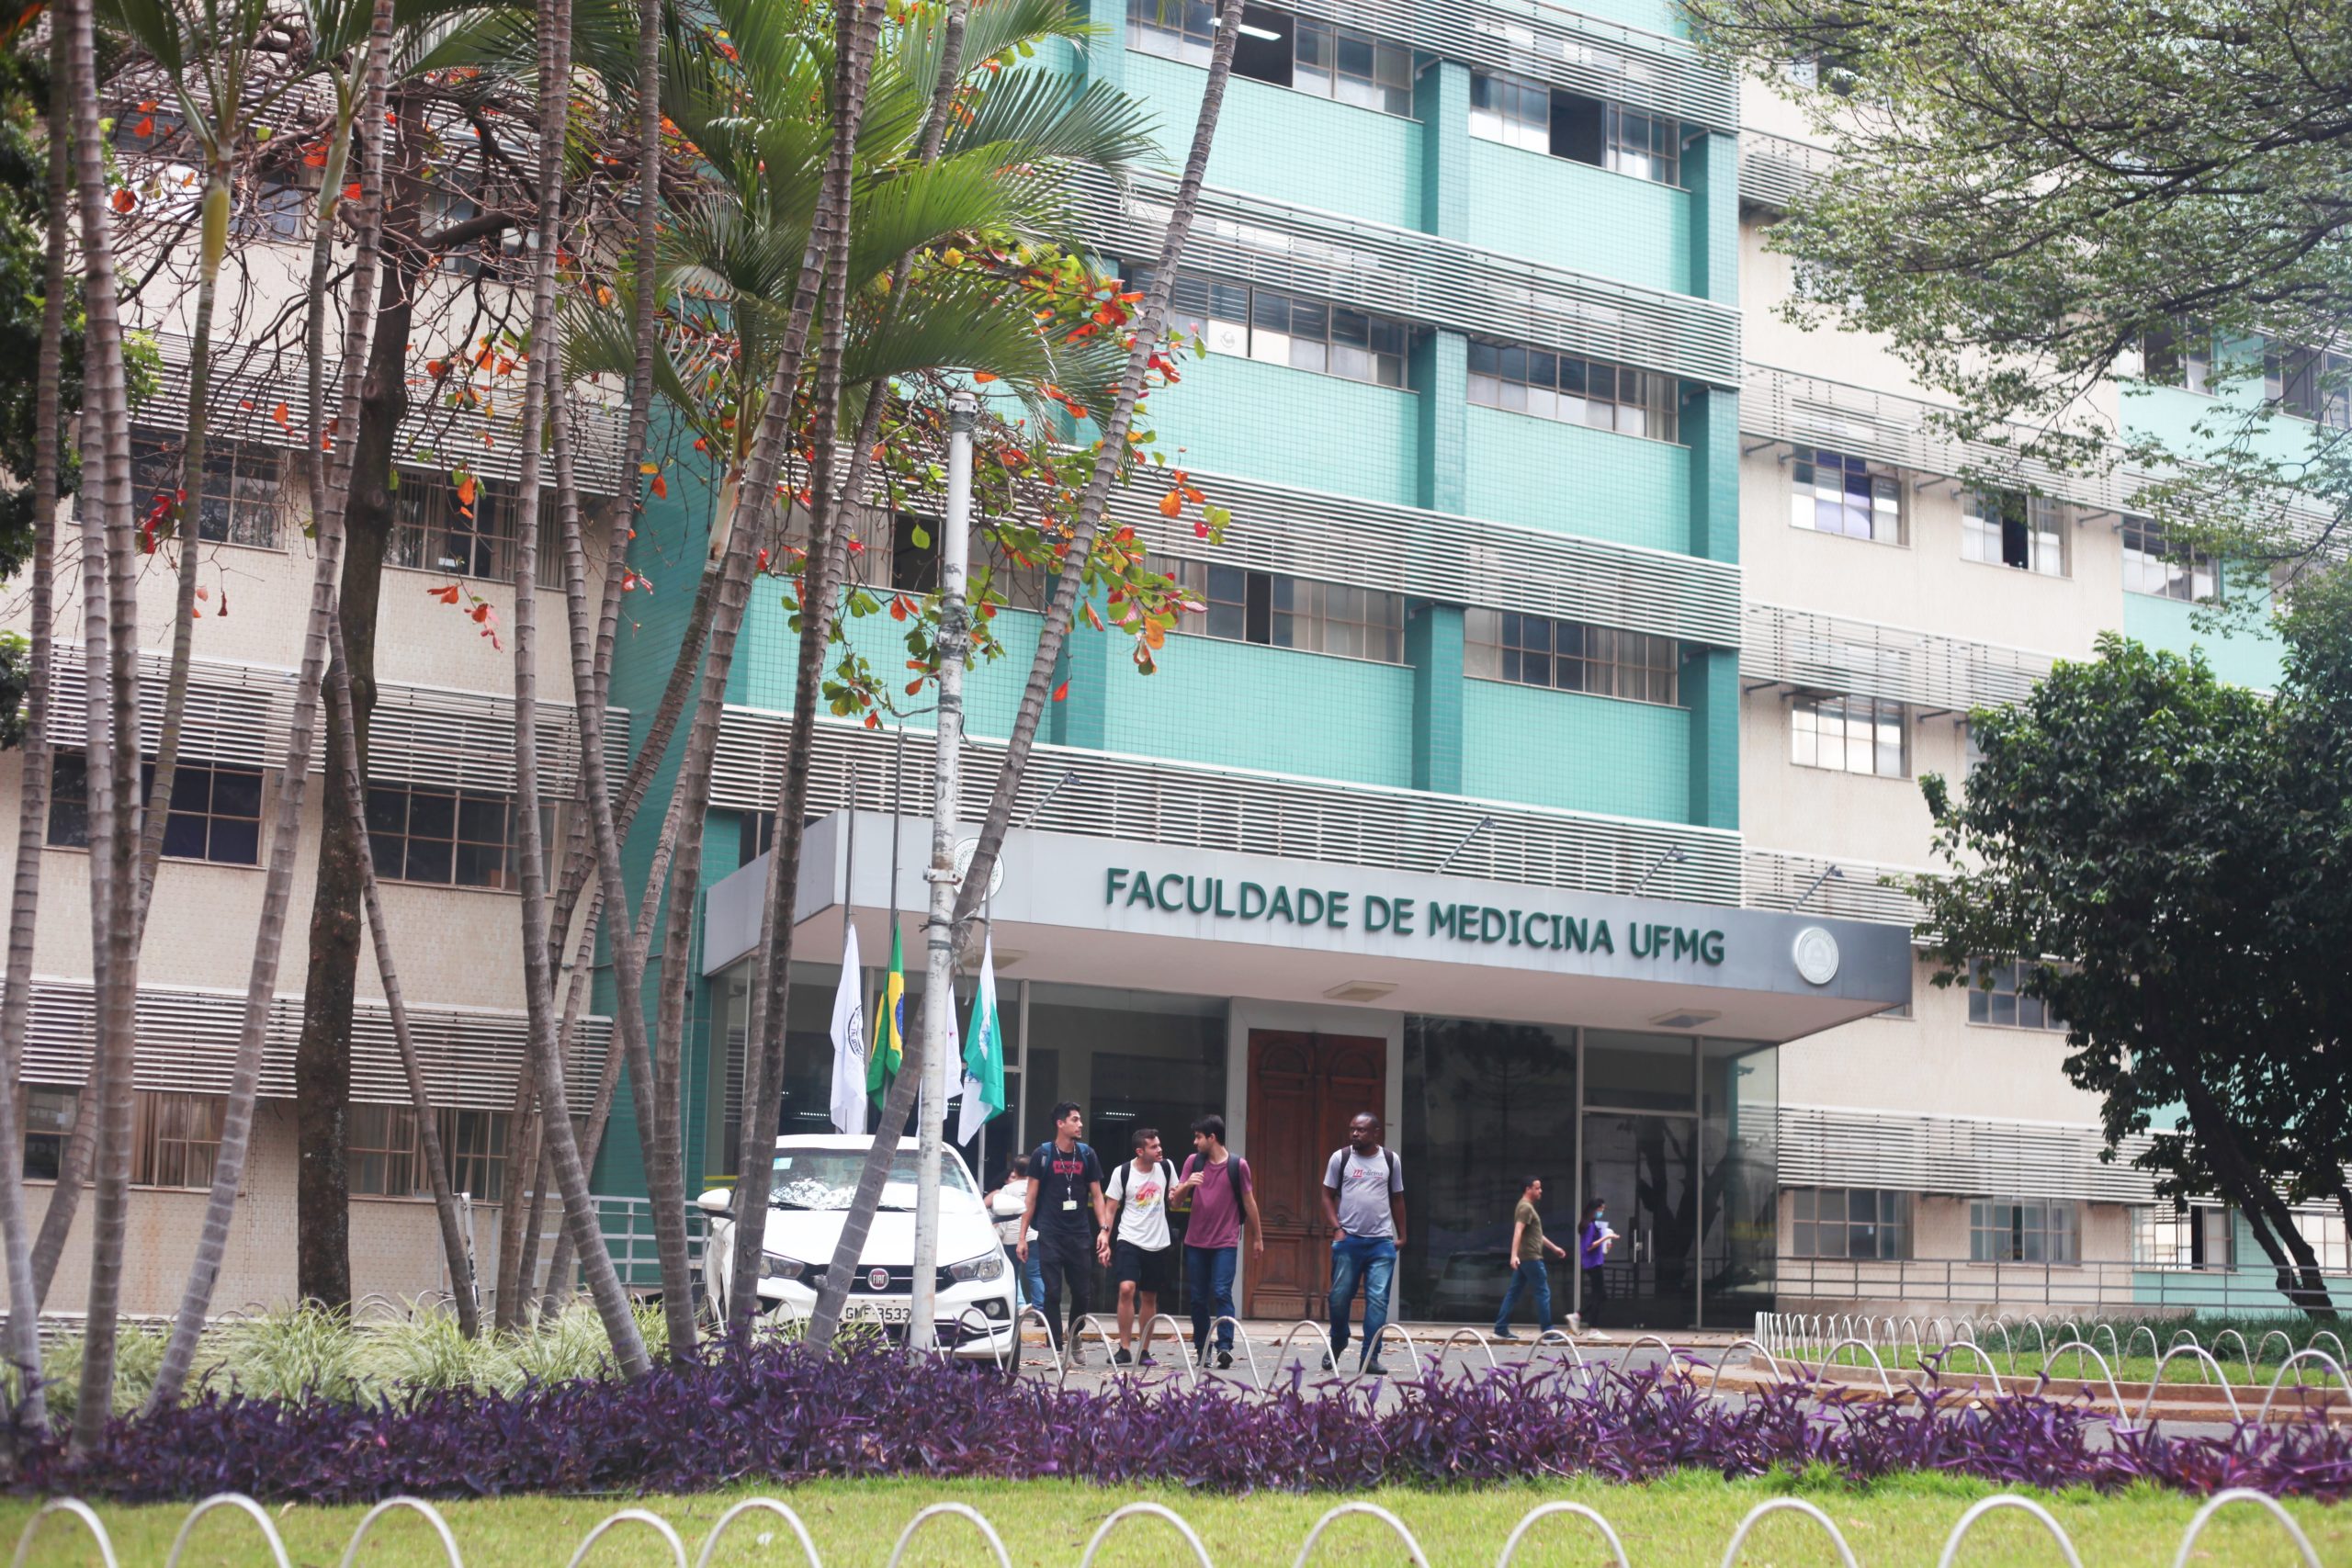 Todos os cursos da Faculdade de Medicina alcançam nota máxima no Enade -  Faculdade de Medicina da UFMG